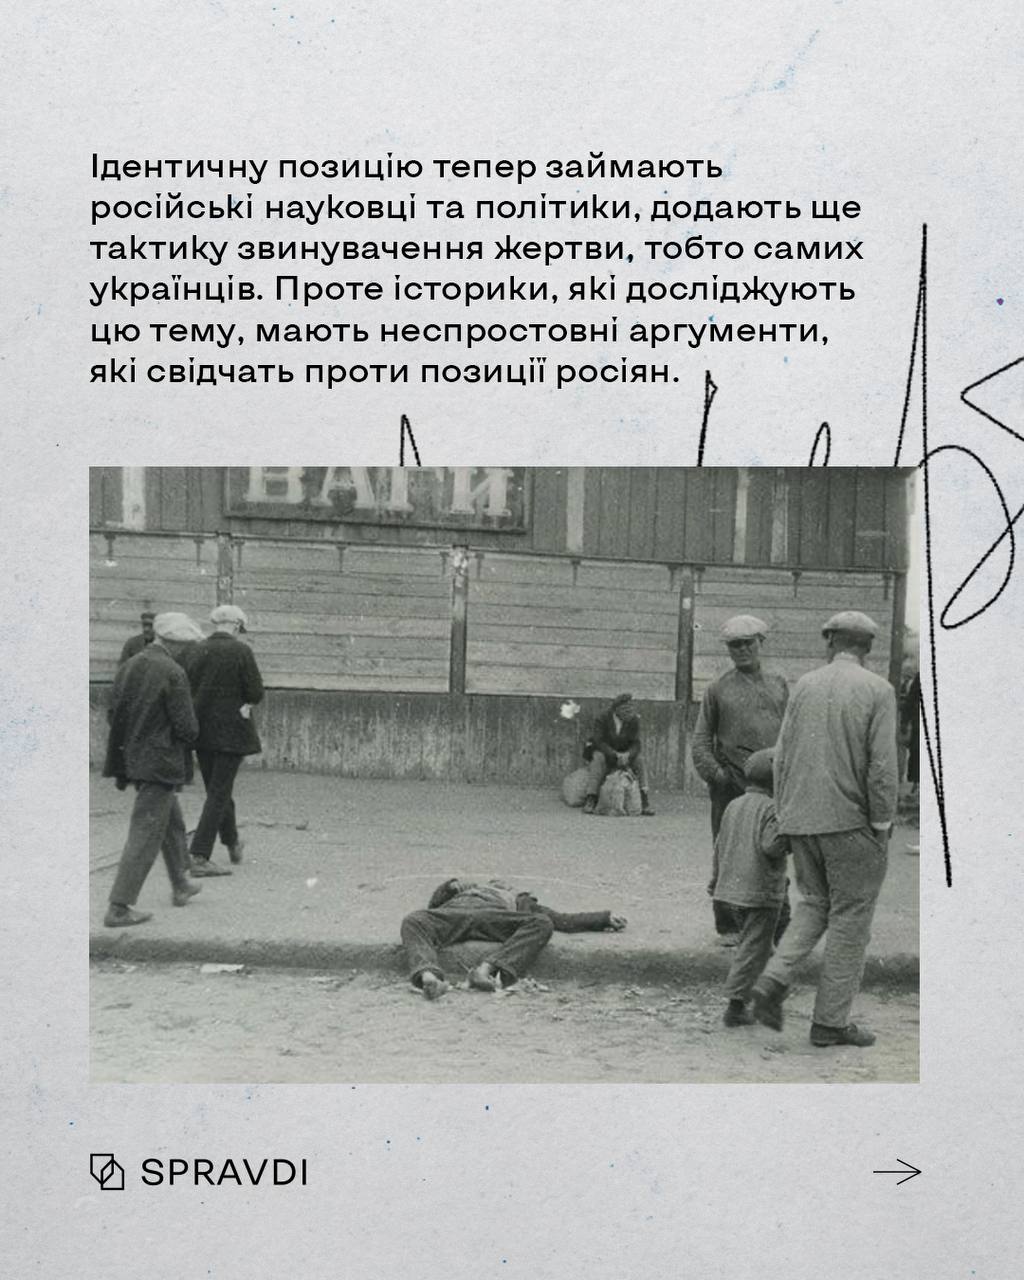 Більше 3 млн людей радянський союз заморив голодом